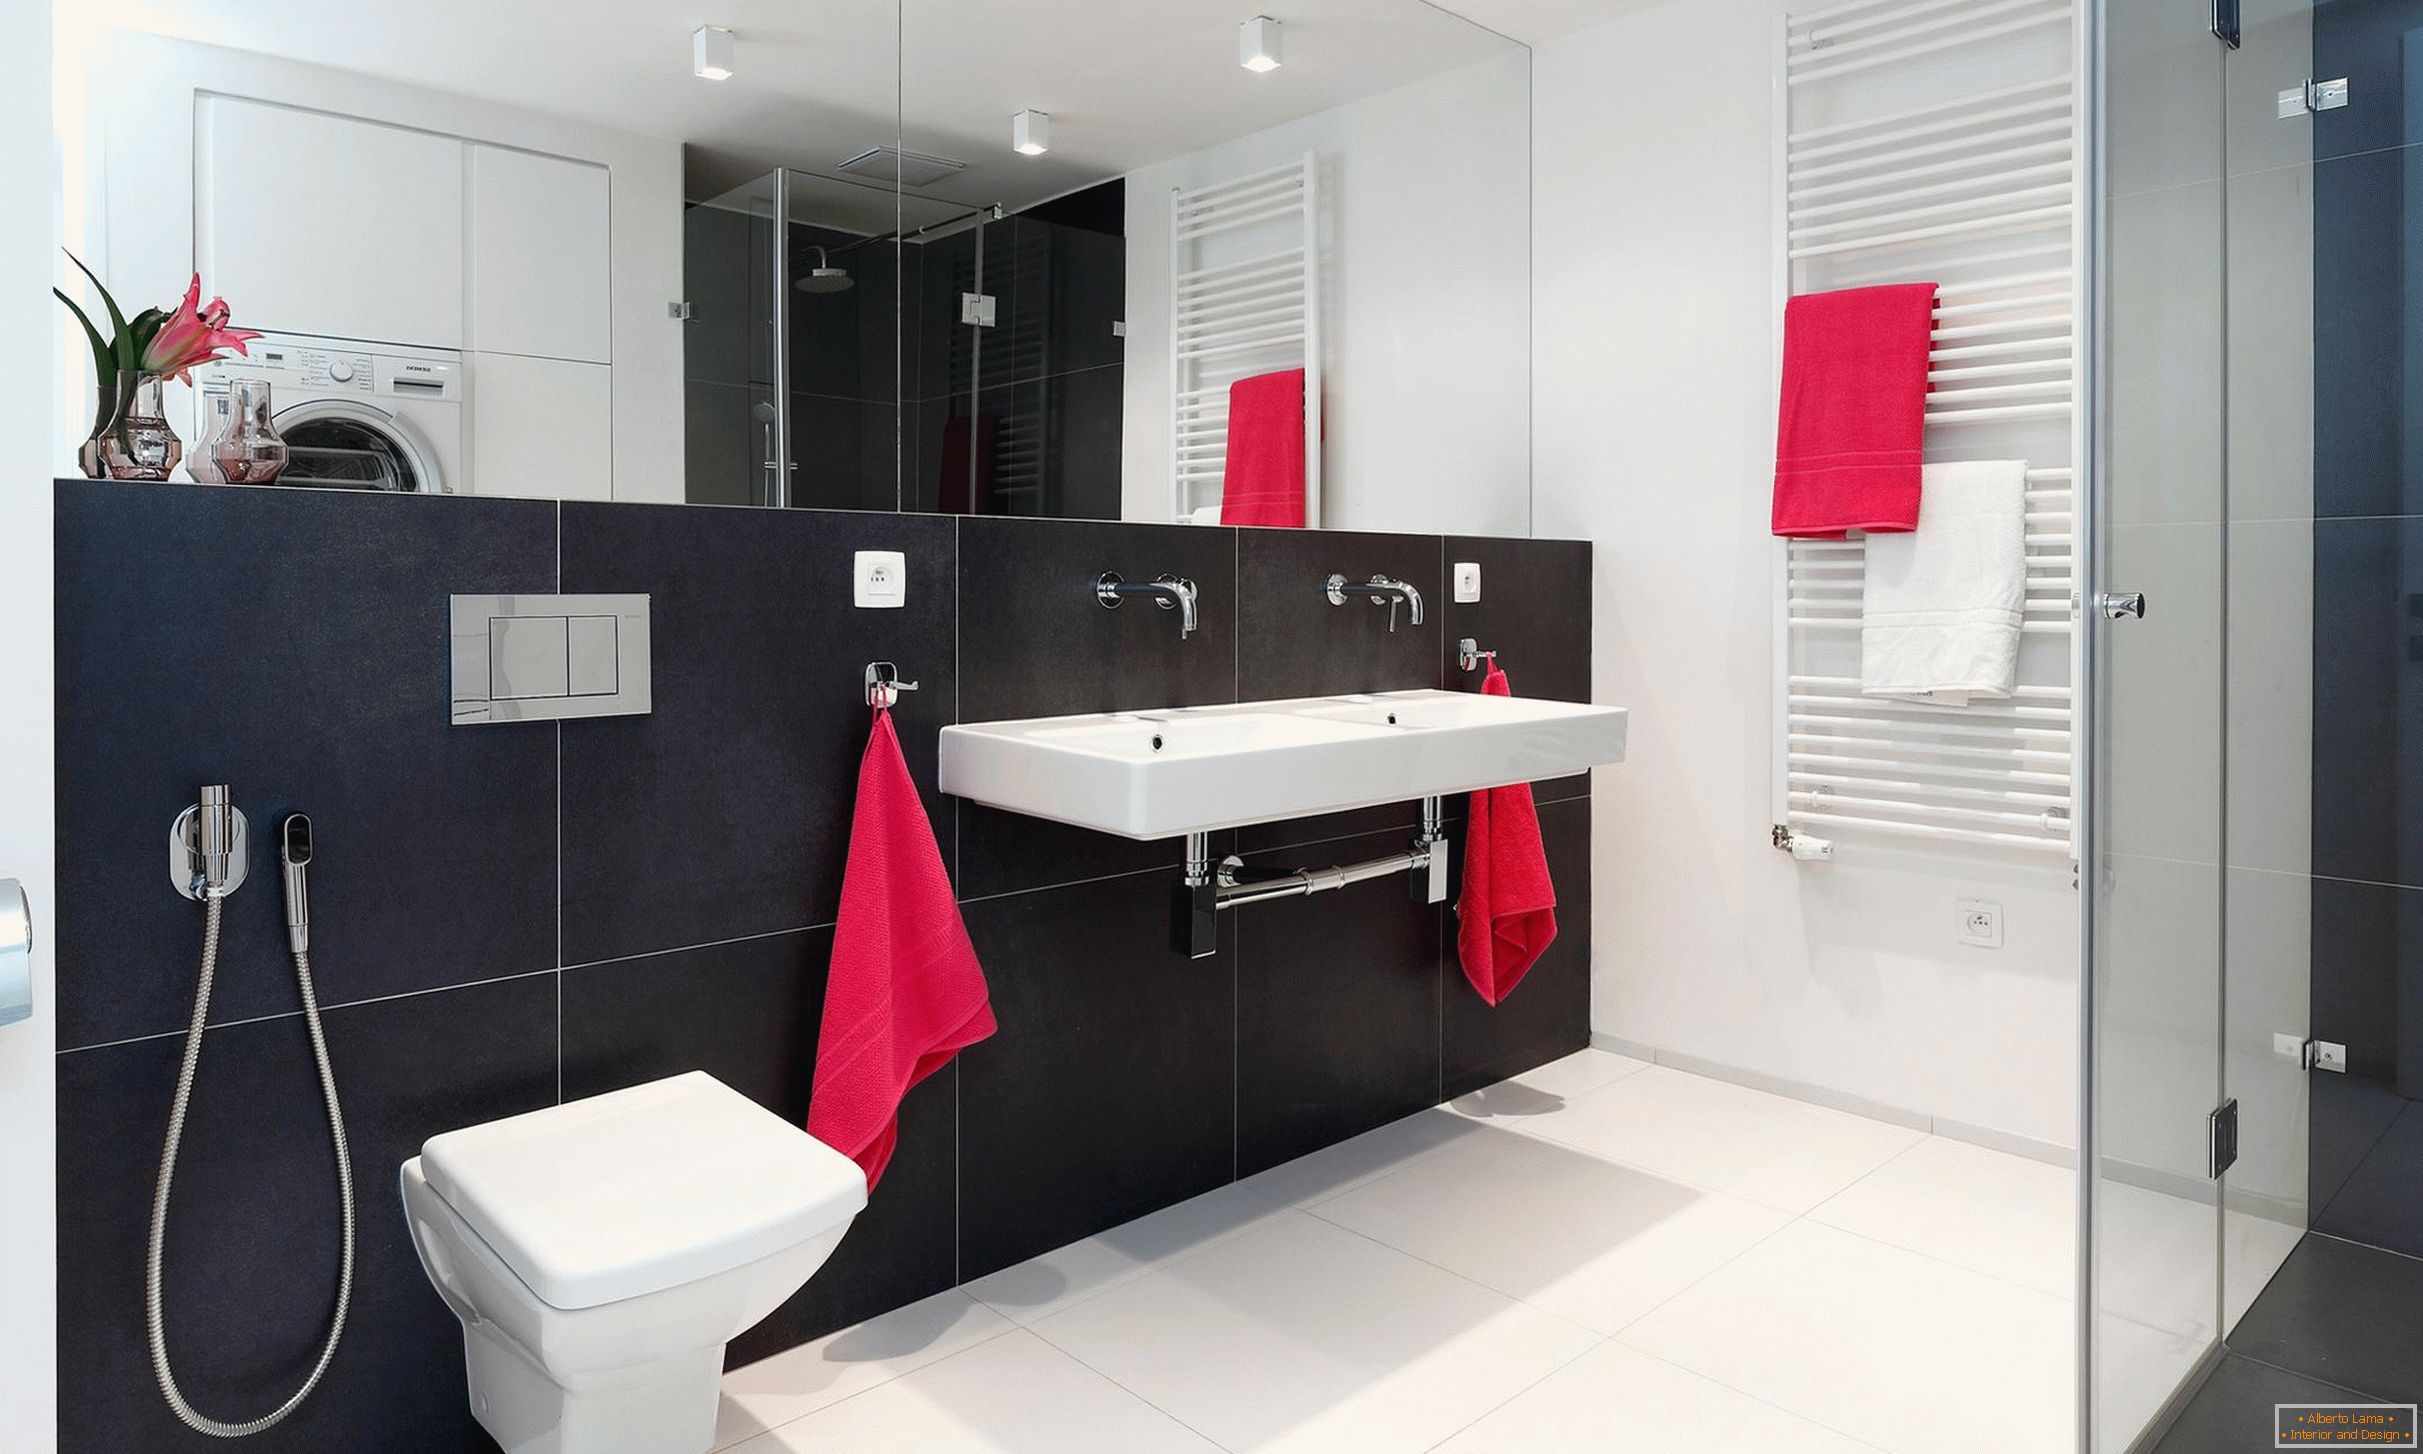 Rojo, blanco y negro en el diseño del baño